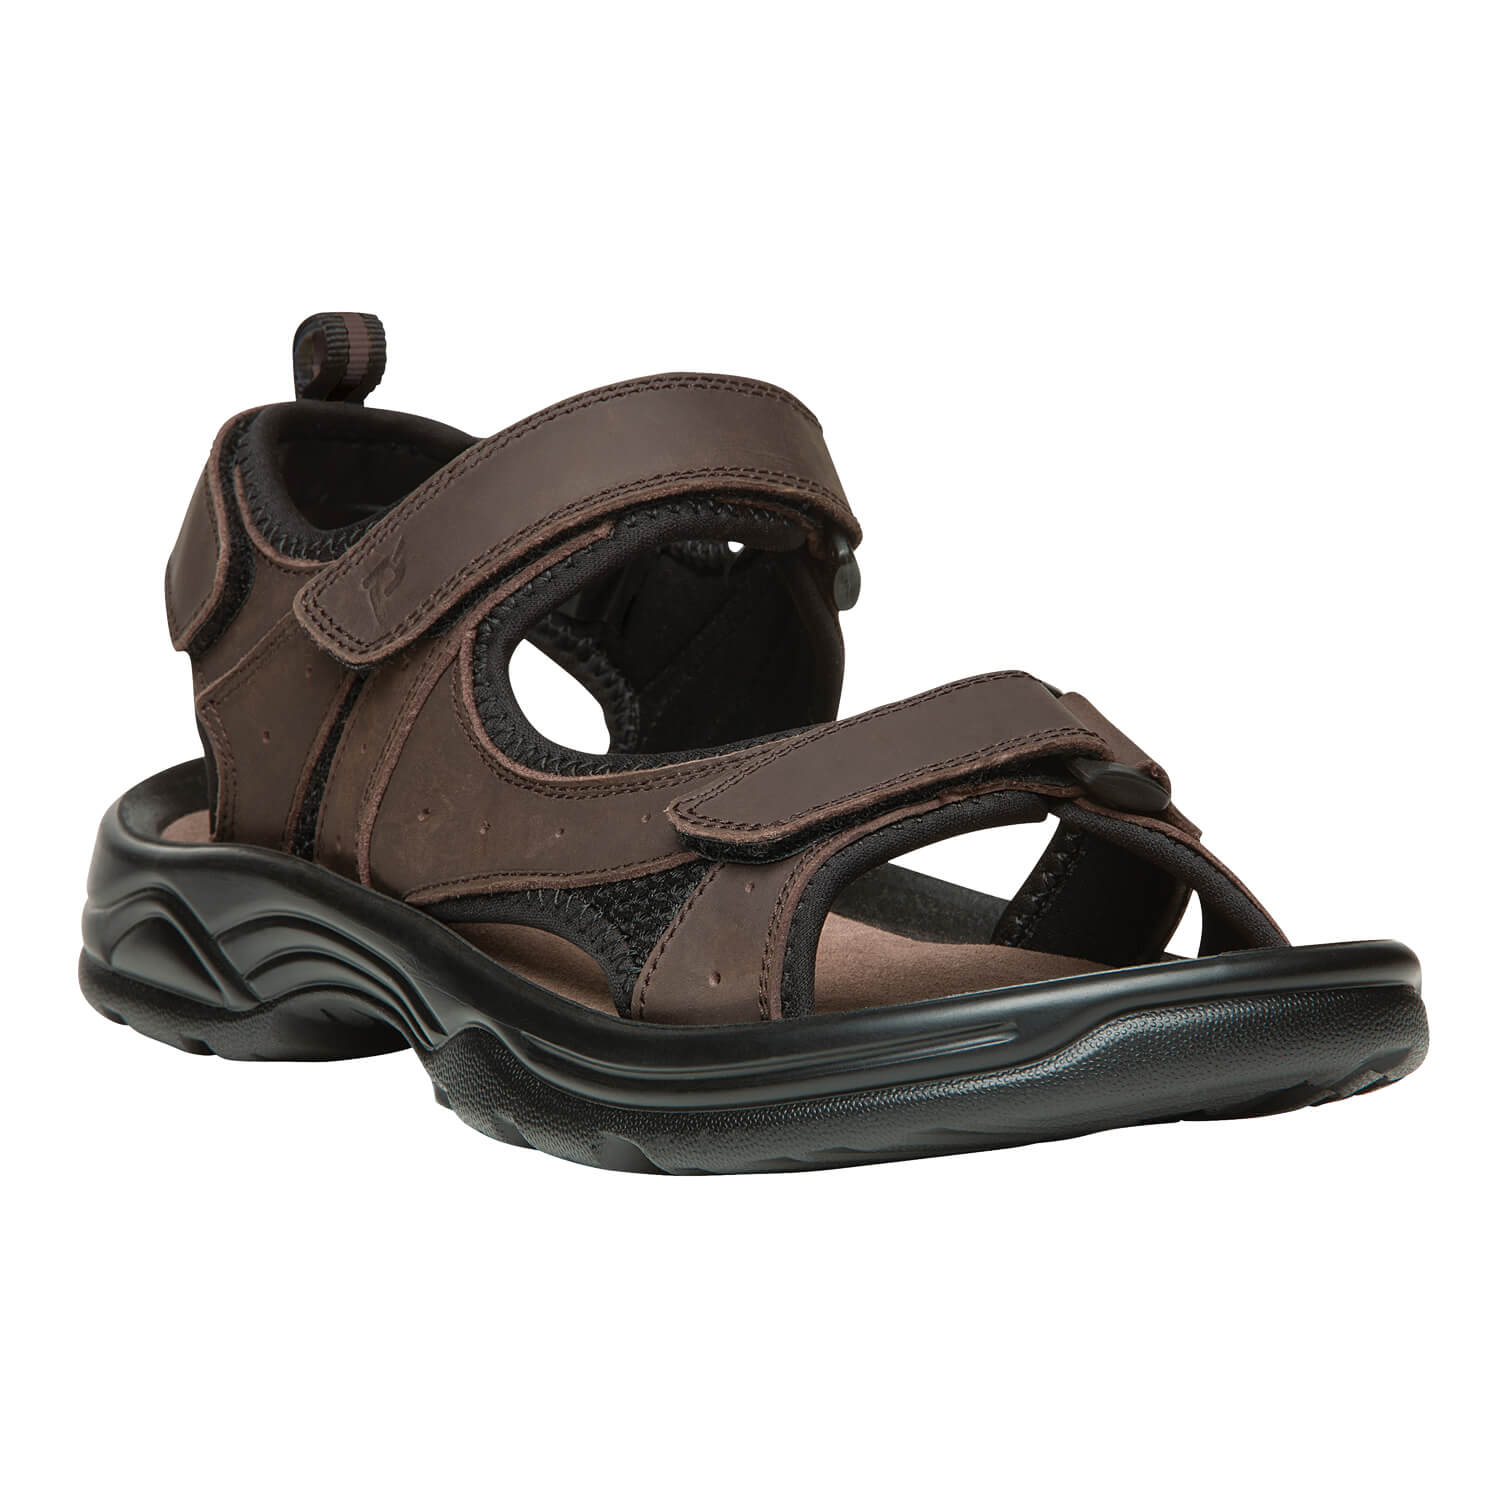 Propet Daytona MSV013L Men's Sandal - Comfort Casual Sandal - Foam Padded Footbed - Extra Wide